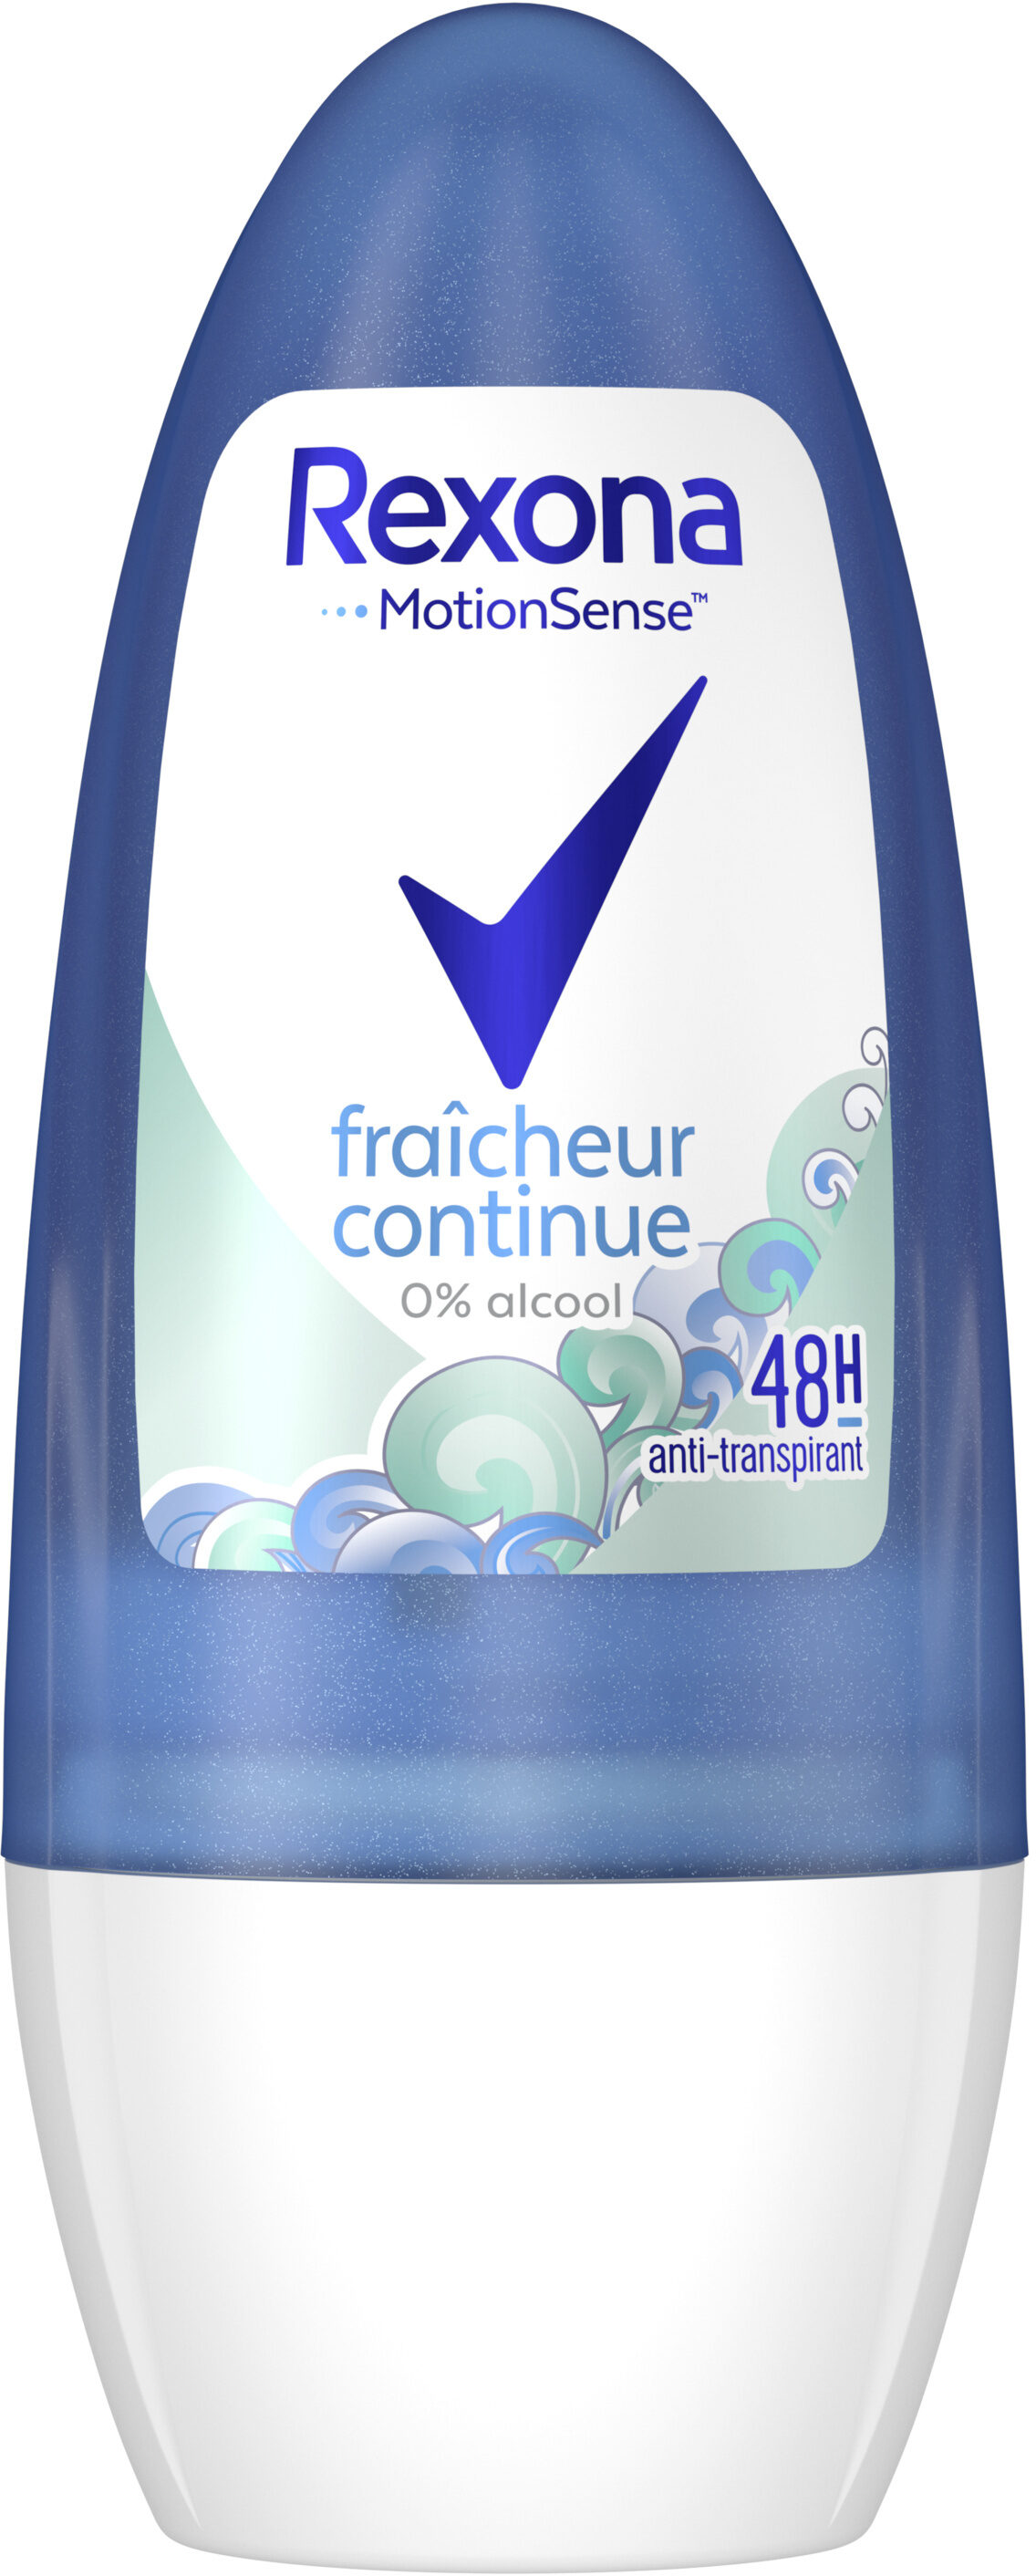 REXONA Déodorant Femme Bille Antibactérien Fraicheur Continue - Product - fr